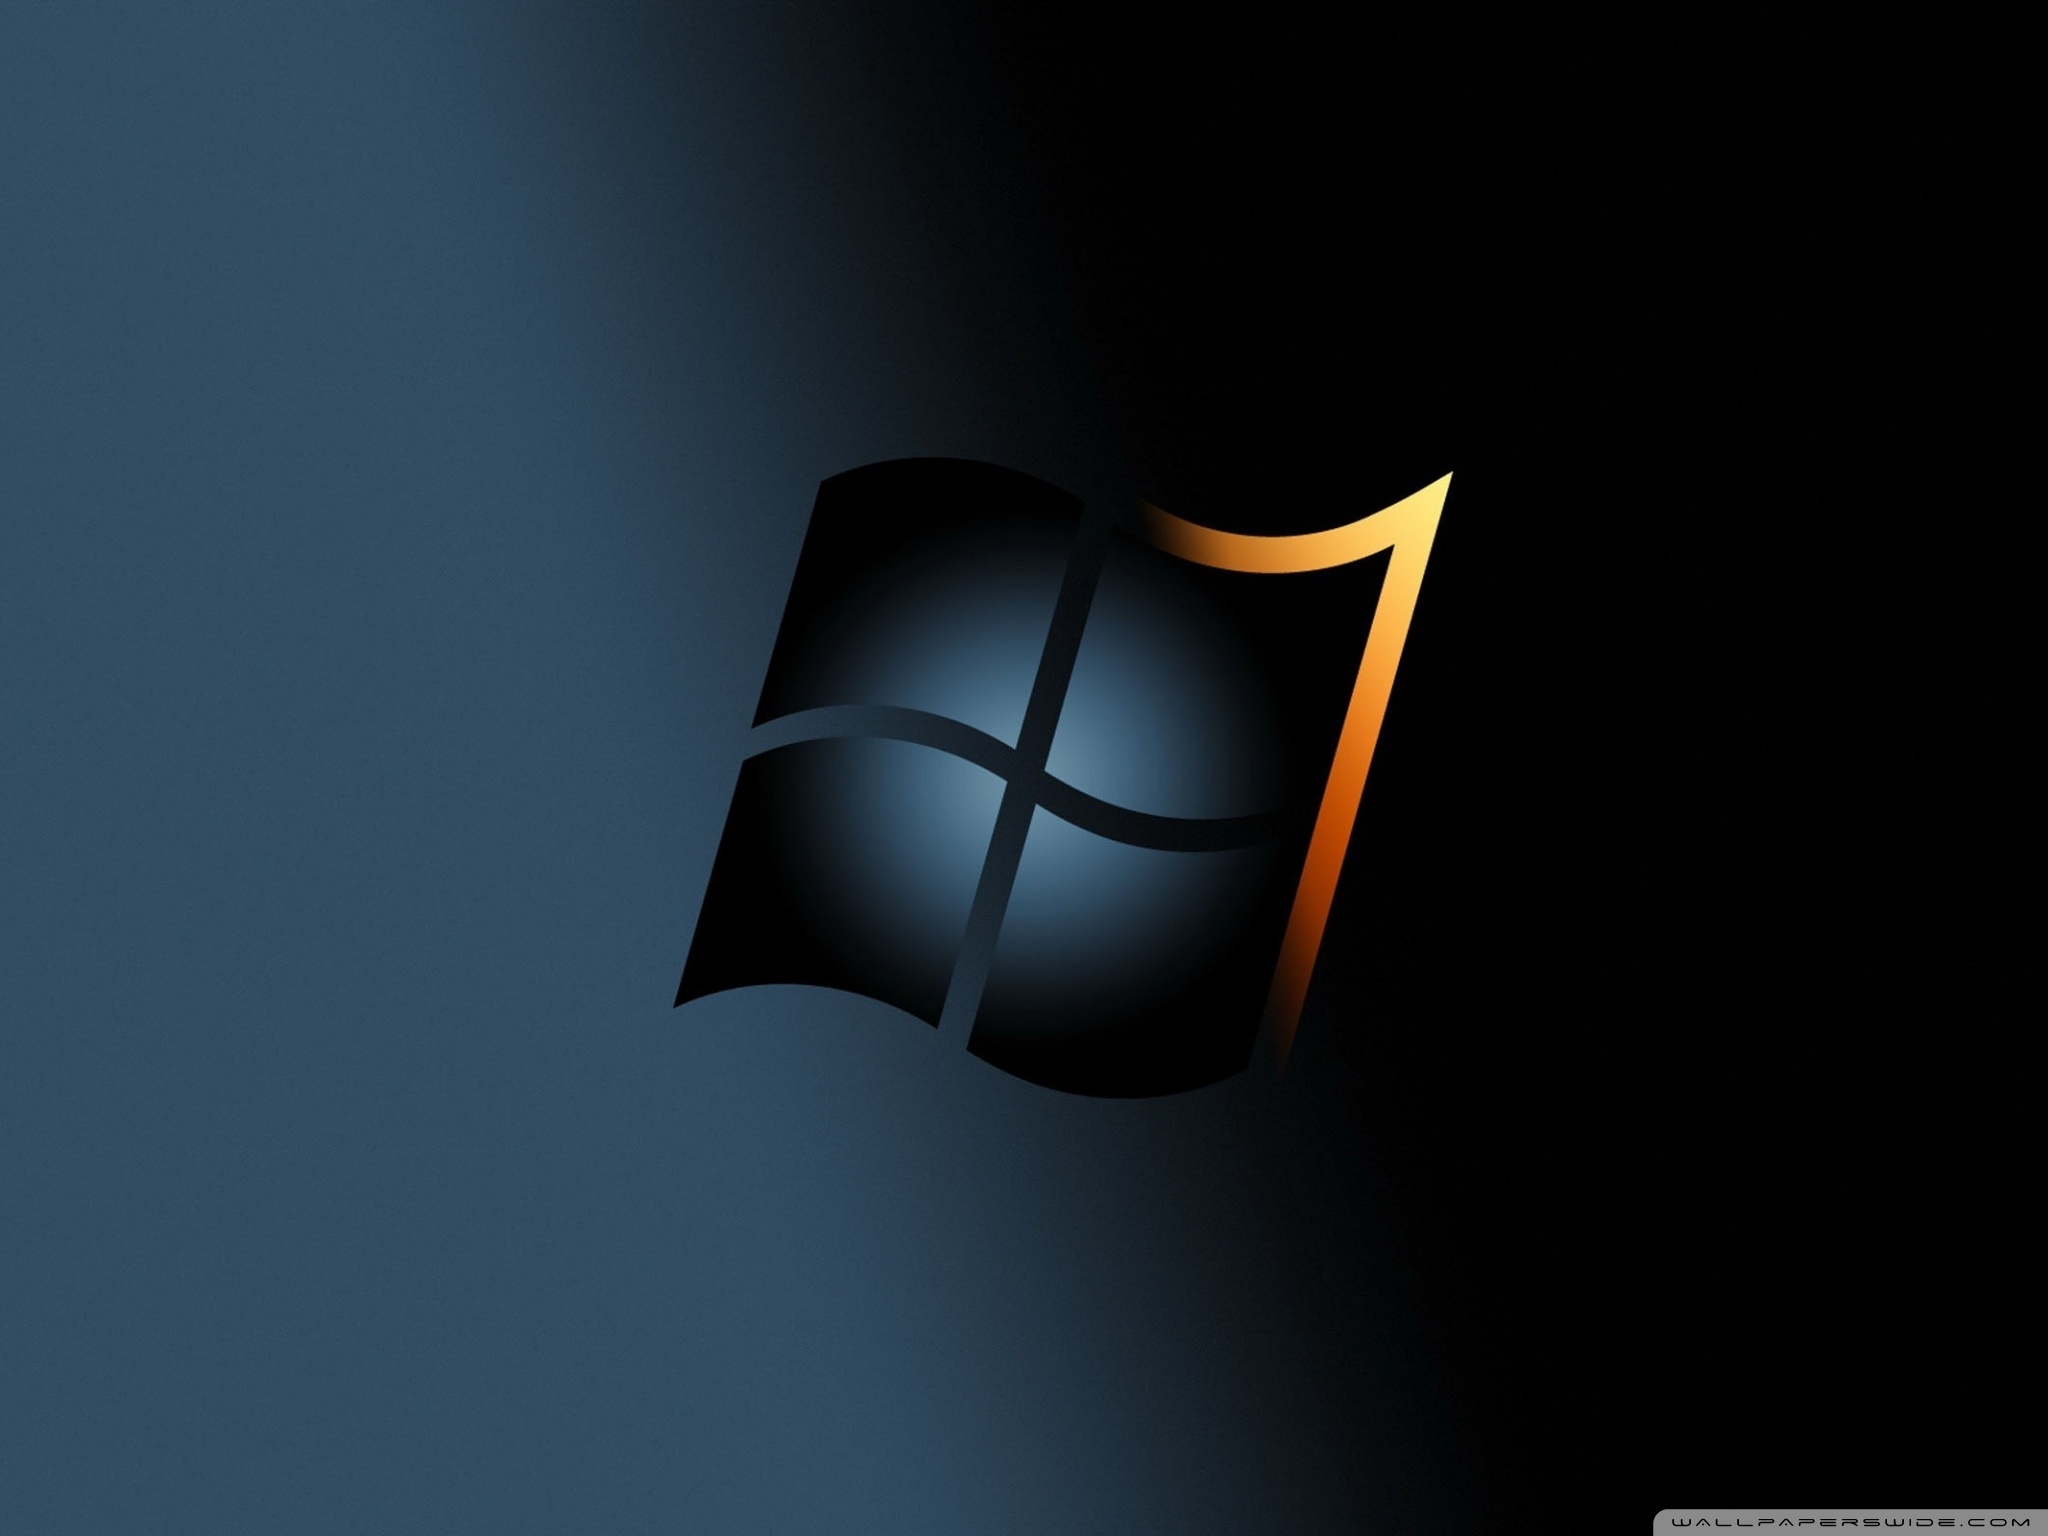 Được làm bằng chất lượng 4K, hình nền đen của Windows 7 sẽ khiến bạn bị thu hút ngay từ lần đầu tiên nhìn thấy. Với độ phân giải gấp 4 lần so với hình ảnh thông thường, bạn sẽ không bao giờ phải chấp nhận chất lượng kém khi sử dụng hình nền đen của Windows